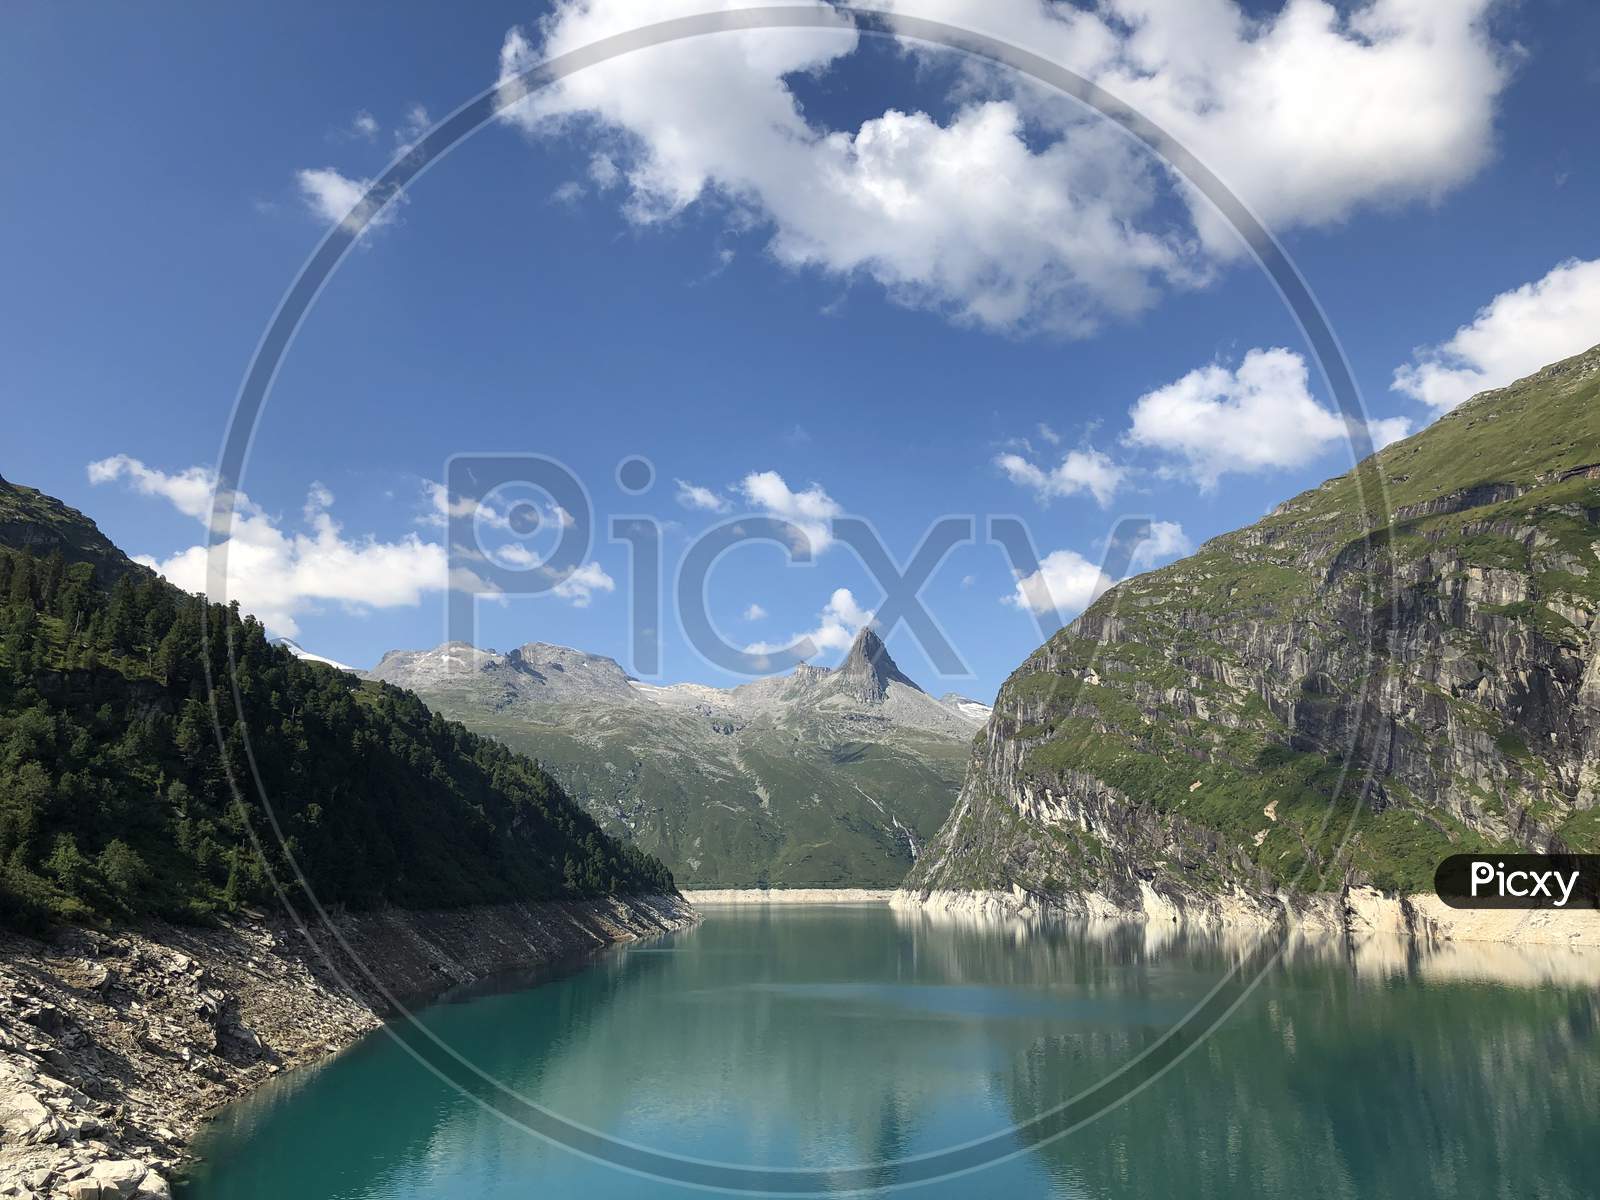 Lake Zervreila in Switzerland 31.7.2020